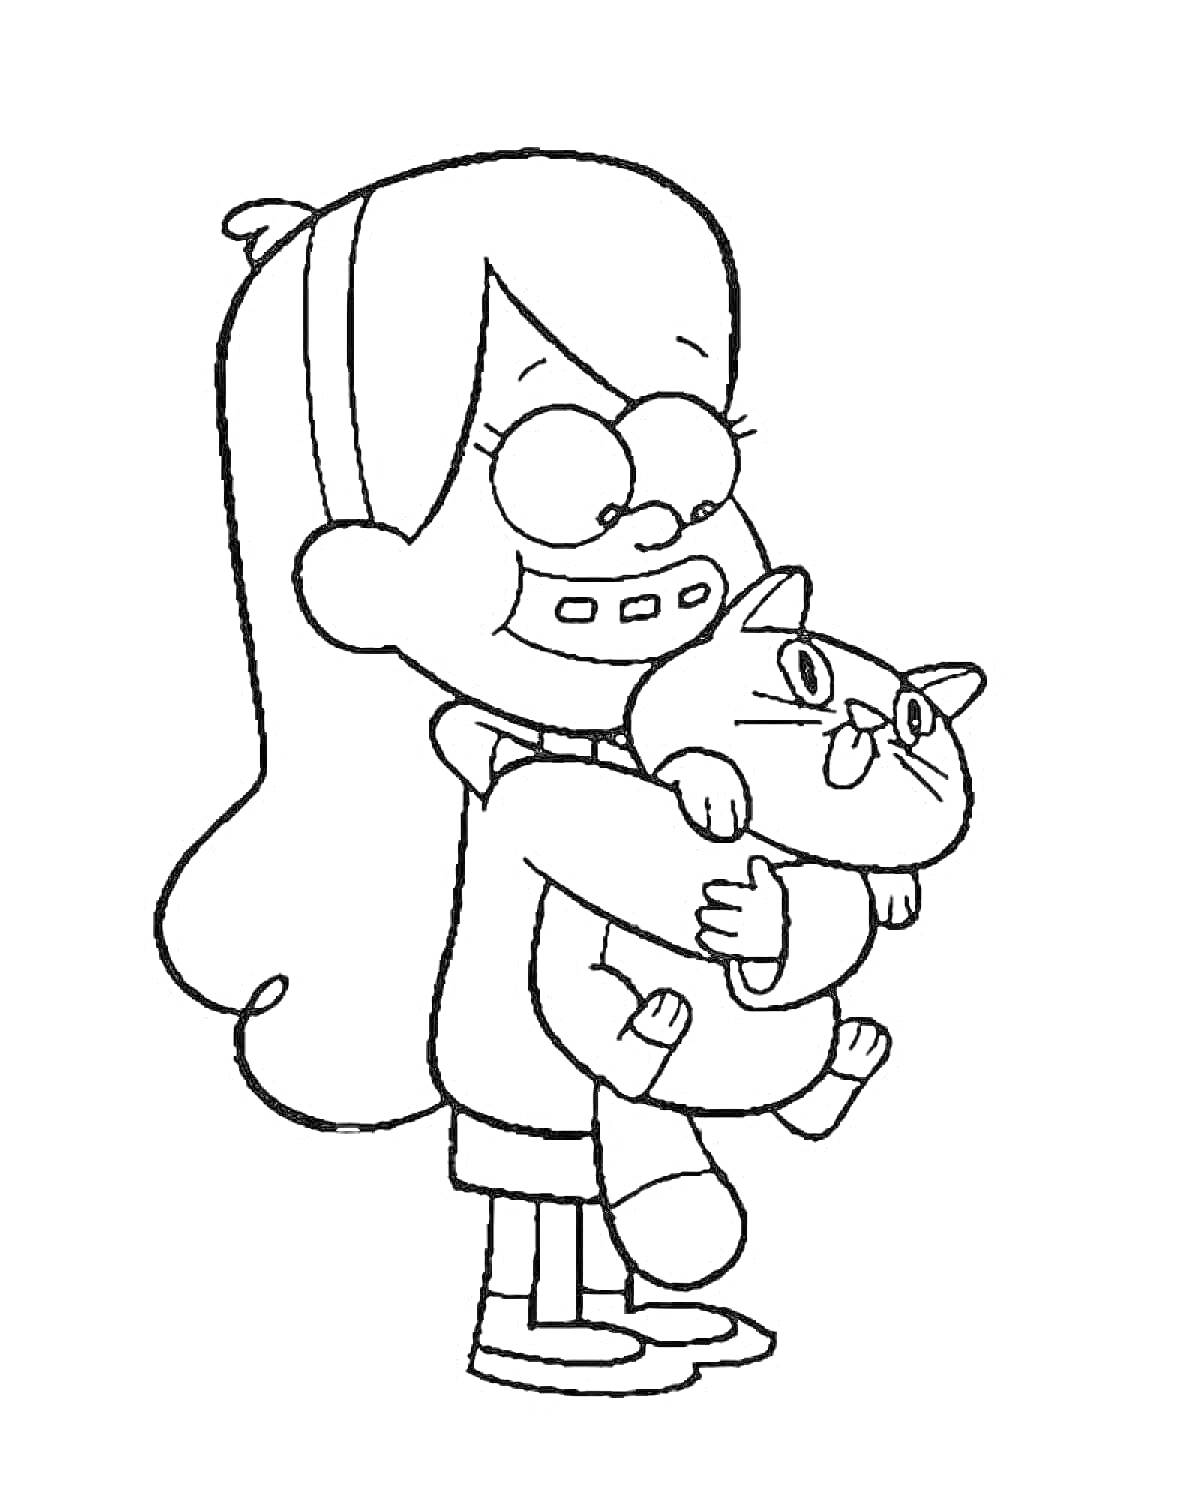 Раскраска Девочка в очках с длинными волосами держит кошку на руках